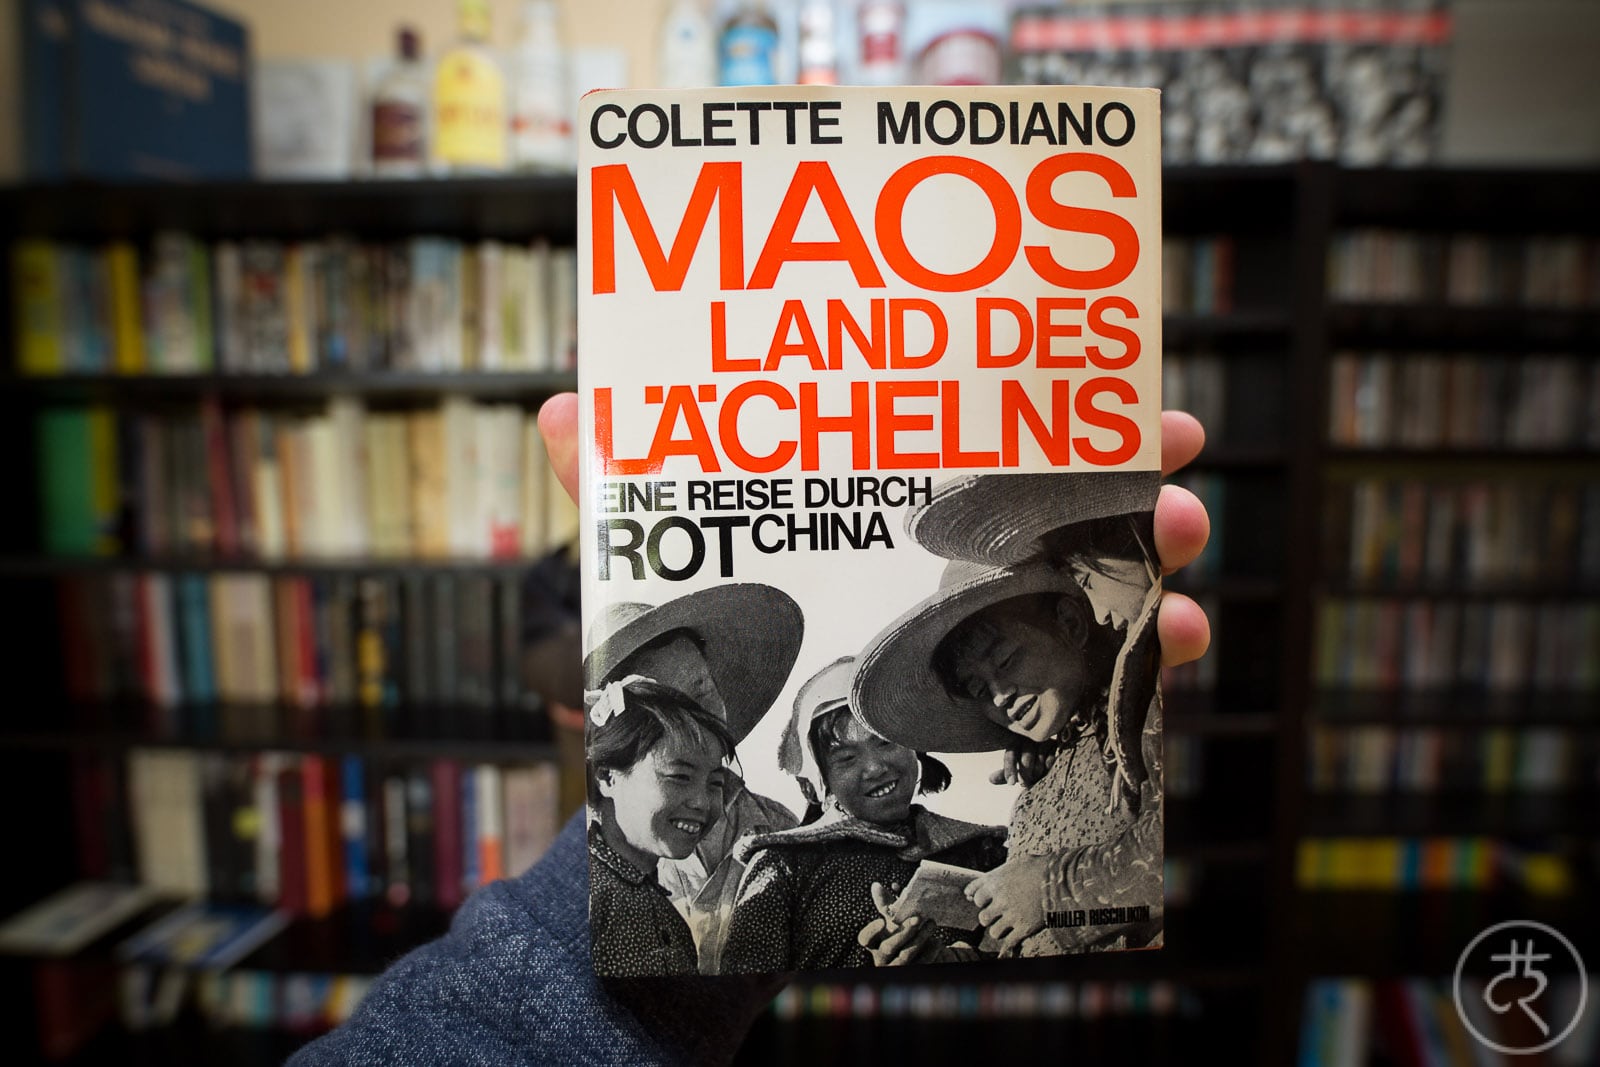 Colette Modiano's "Twenty Snobs and Mao"